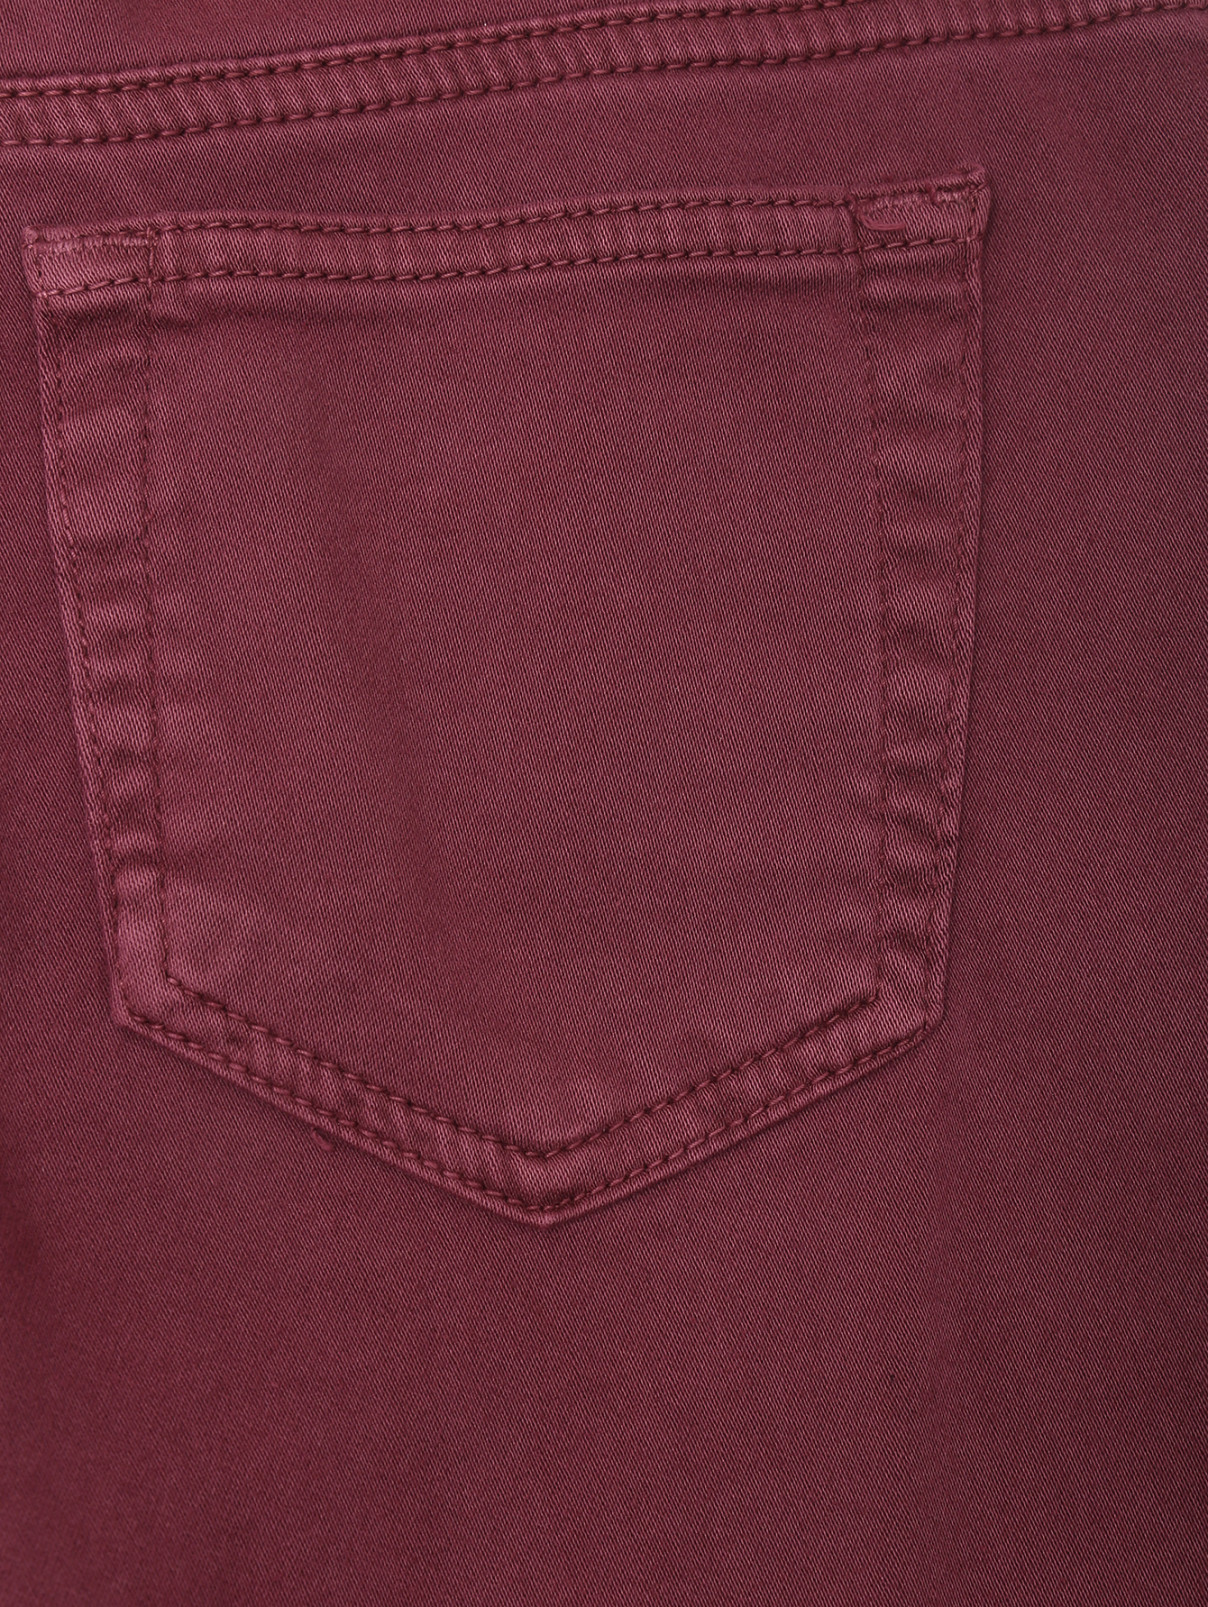 Однотонные джинсы-клеш Diesel  –  Деталь  – Цвет:  Красный